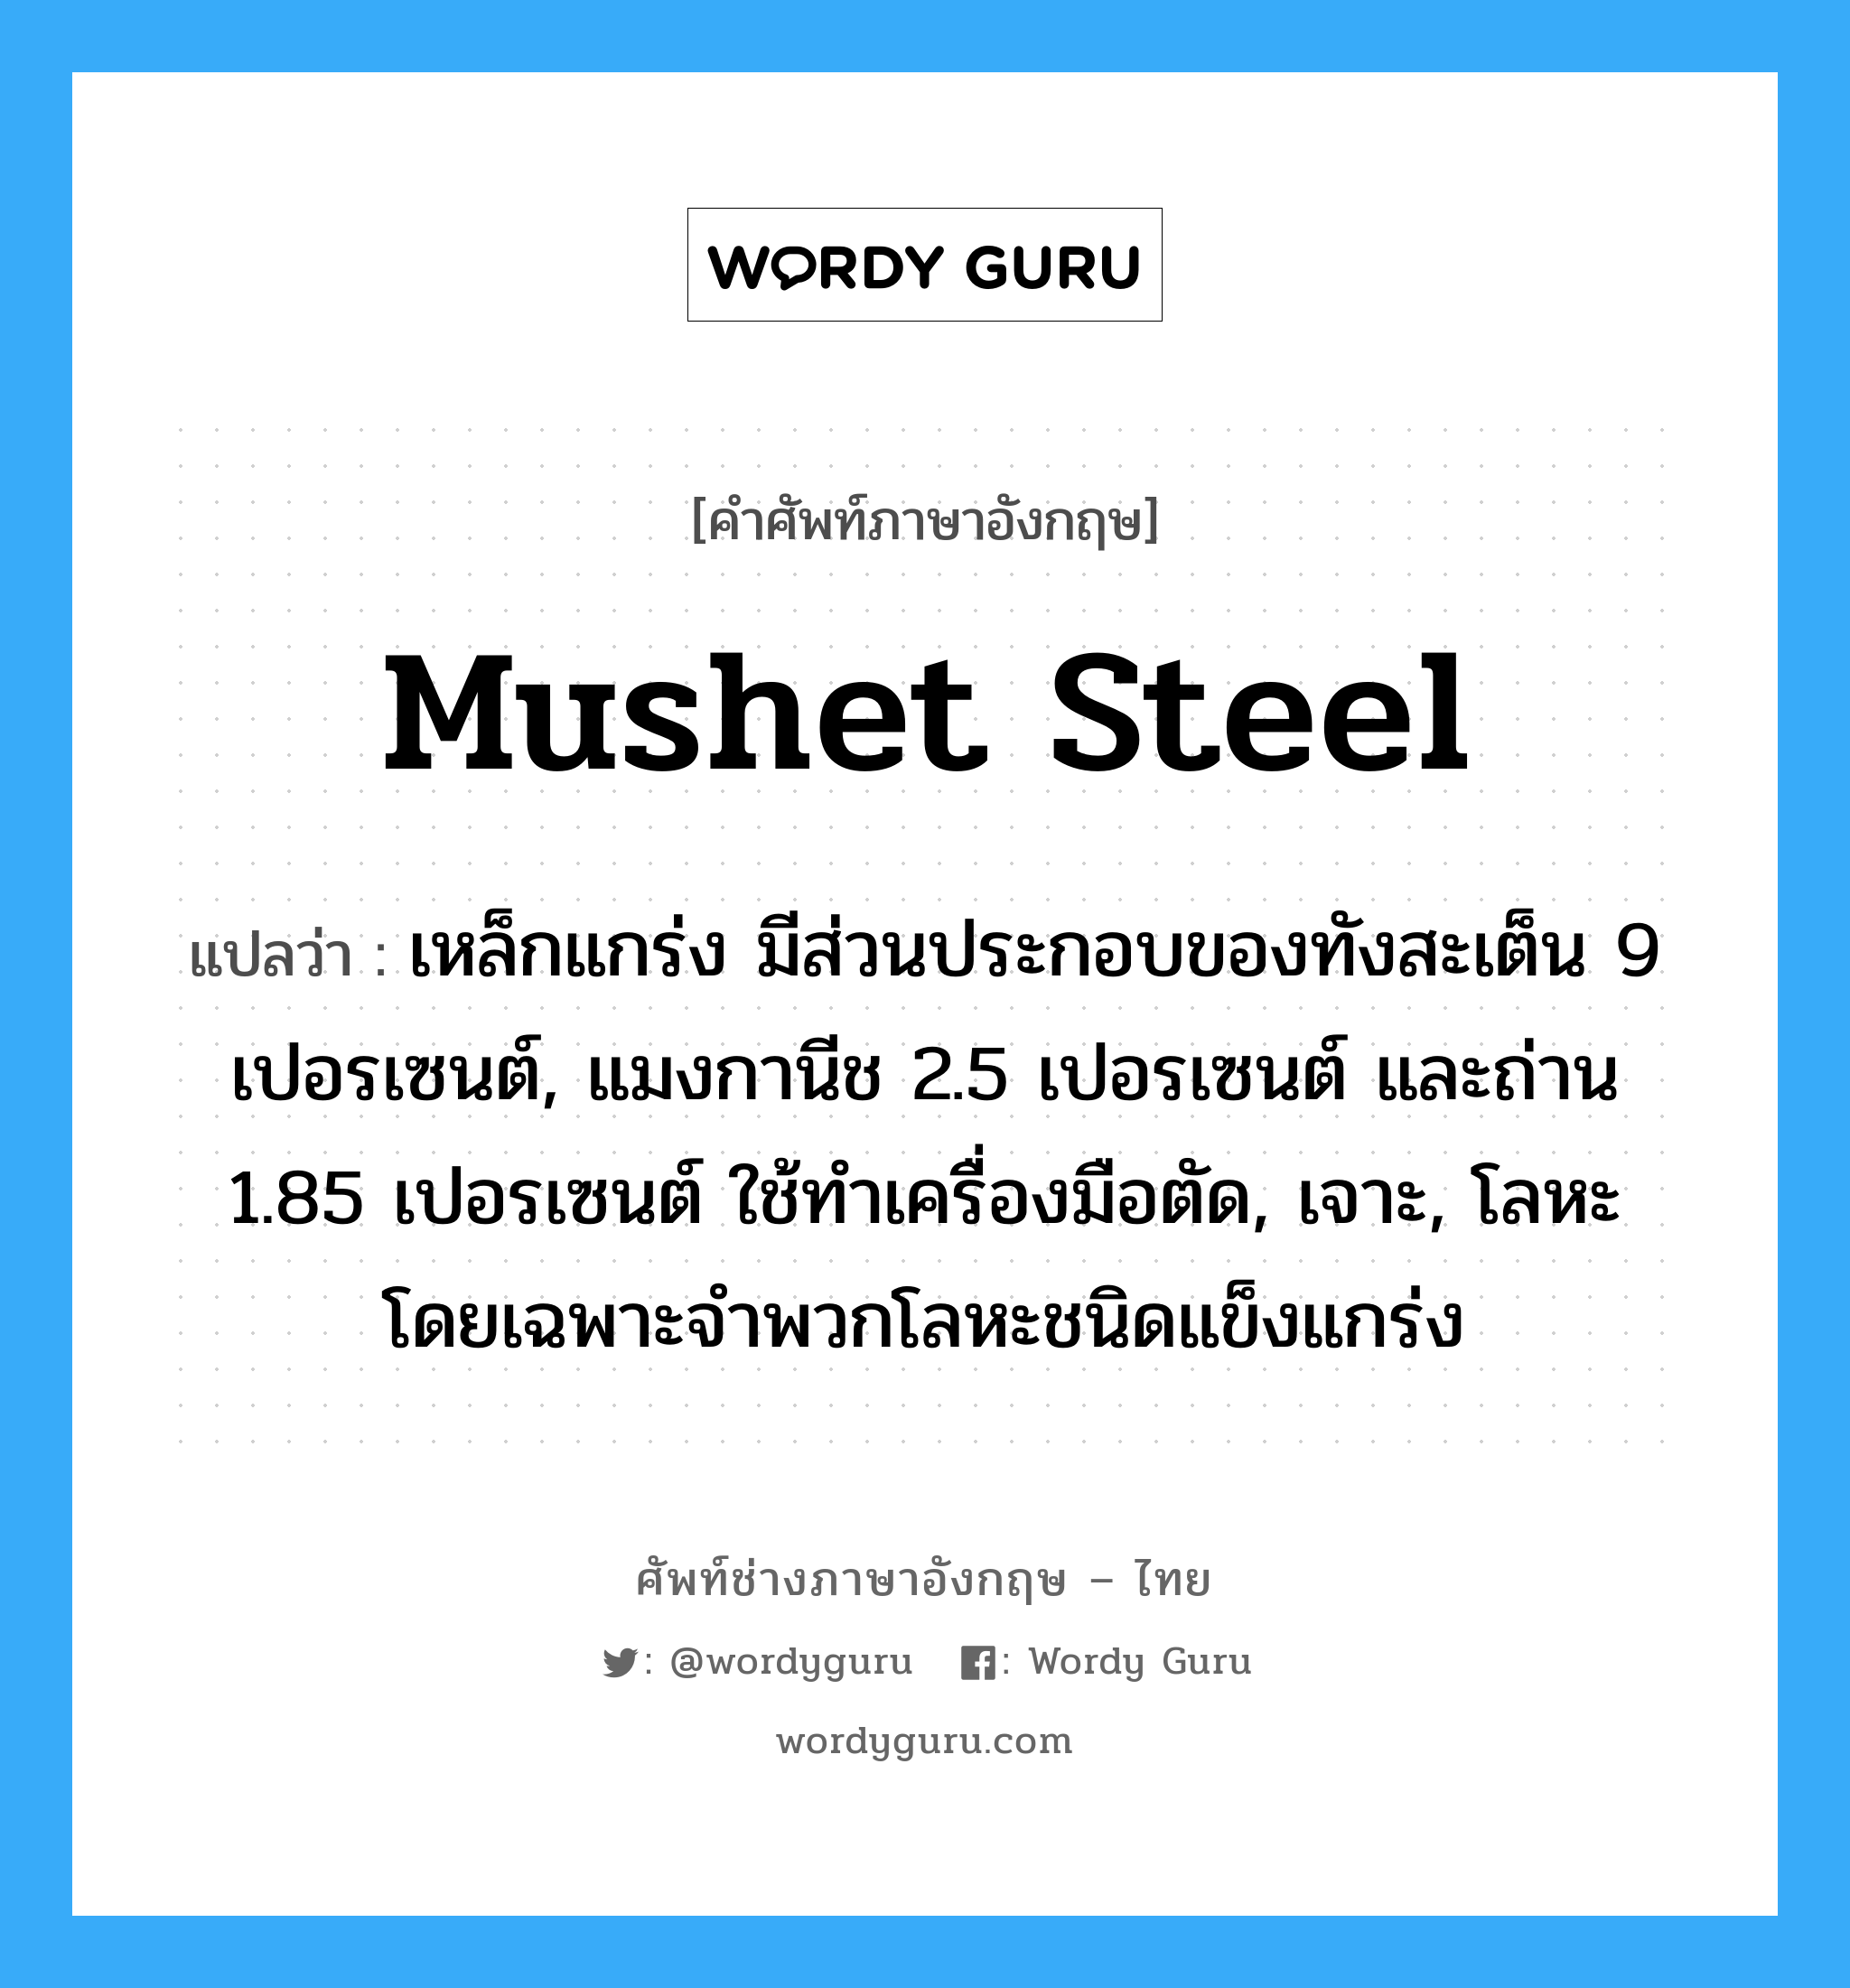 mushet steel แปลว่า?, คำศัพท์ช่างภาษาอังกฤษ - ไทย mushet steel คำศัพท์ภาษาอังกฤษ mushet steel แปลว่า เหล็กแกร่ง มีส่วนประกอบของทังสะเต็น 9 เปอรเซนต์, แมงกานีช 2.5 เปอรเซนต์ และถ่าน 1.85 เปอรเซนต์ ใช้ทำเครื่องมือตัด, เจาะ, โลหะ โดยเฉพาะจำพวกโลหะชนิดแข็งแกร่ง